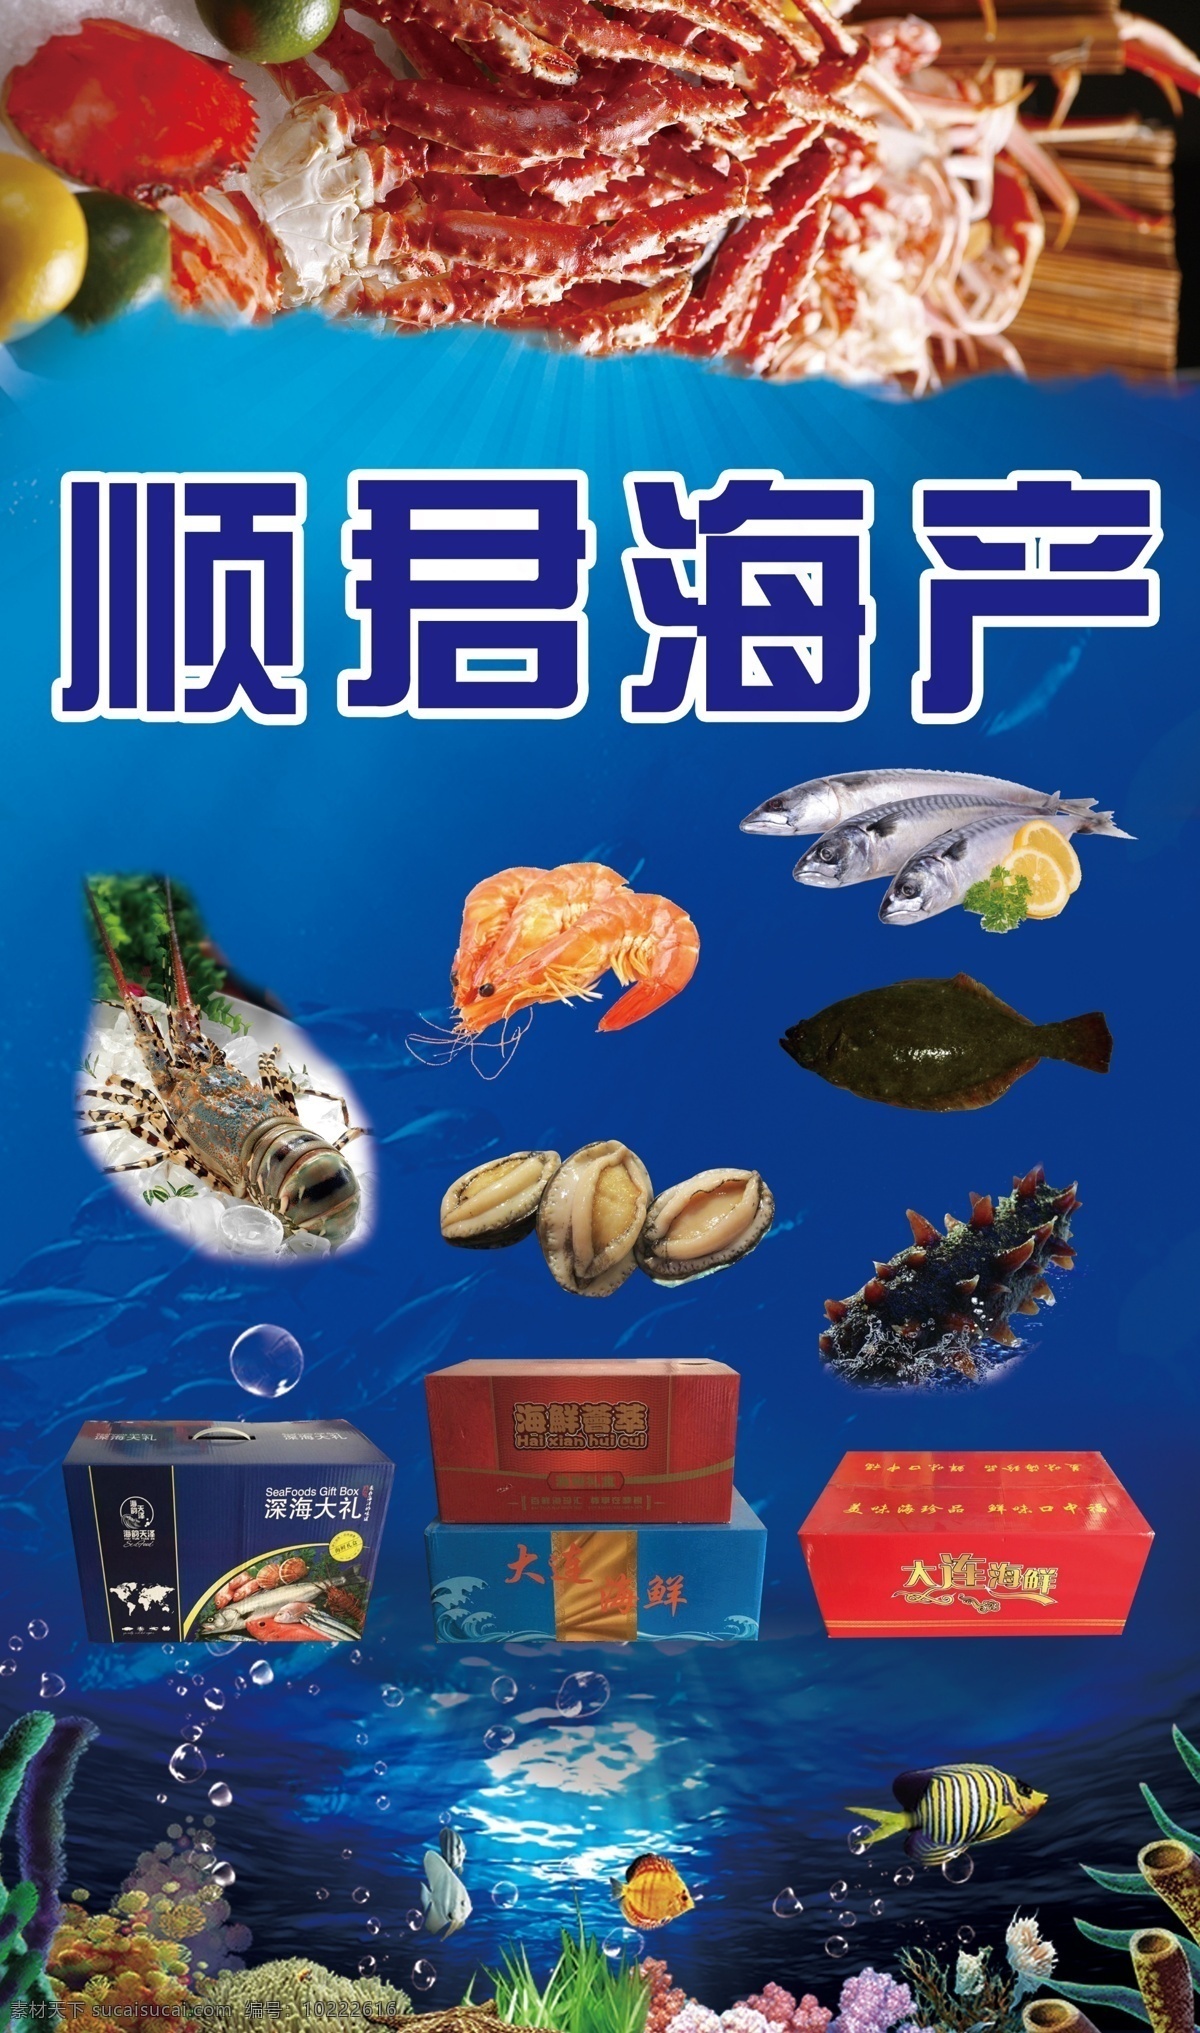 海产品 礼盒 广告 海鲜礼盒 海鲜广告 海产品组合 大连海鲜 室外广告设计